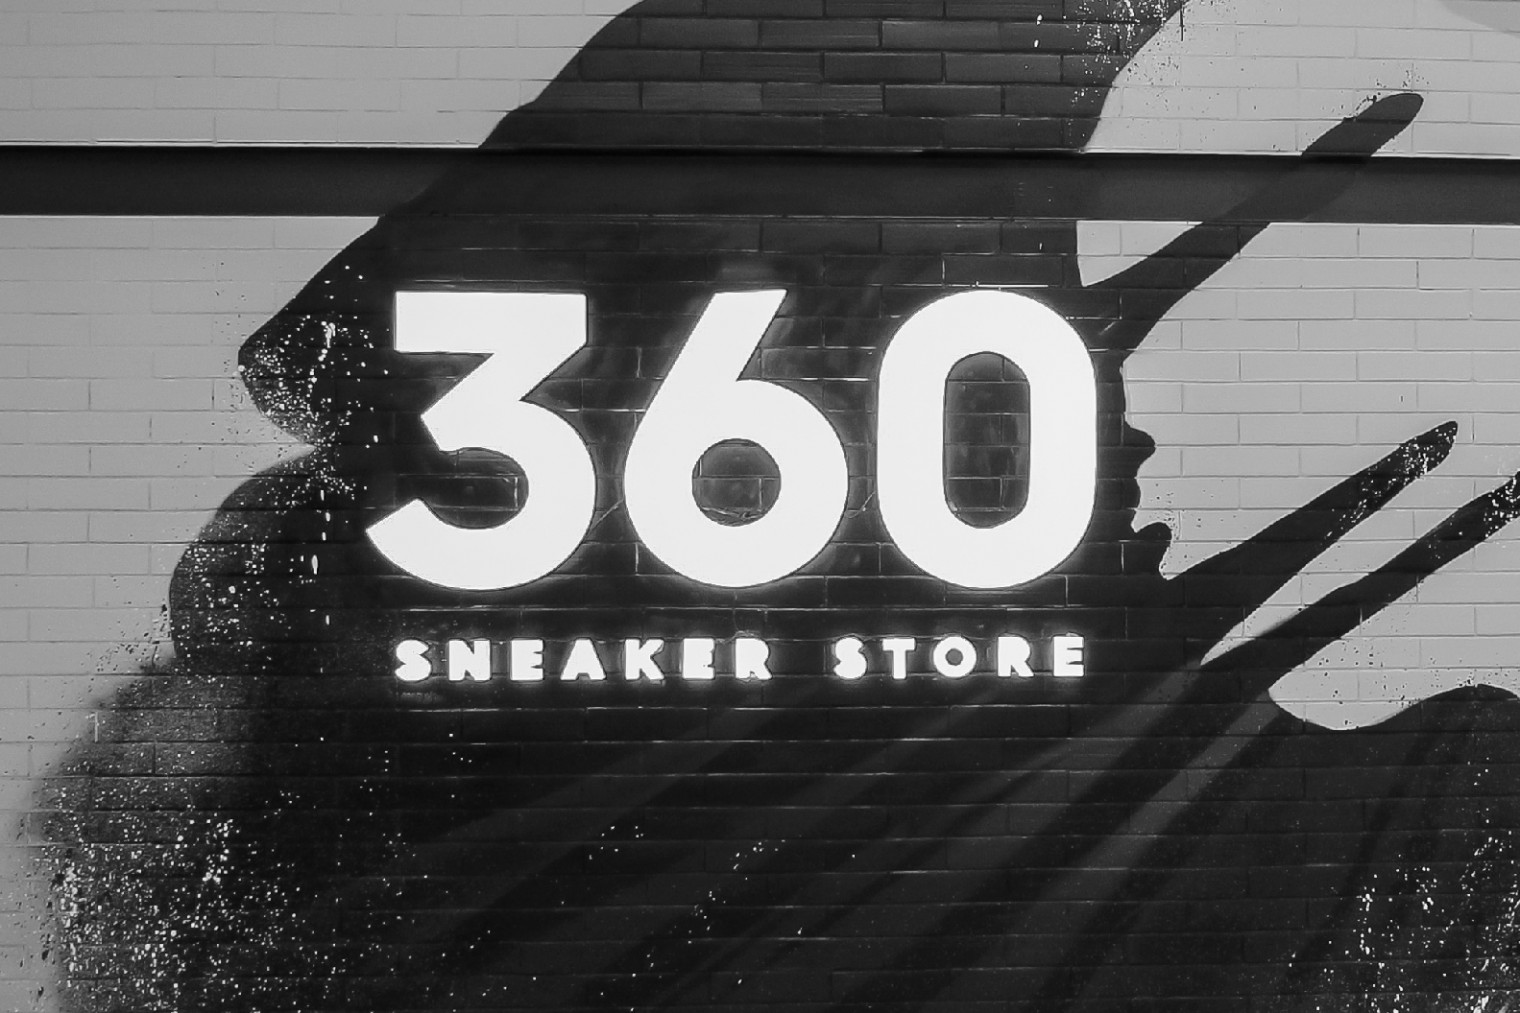 360 sneaker store